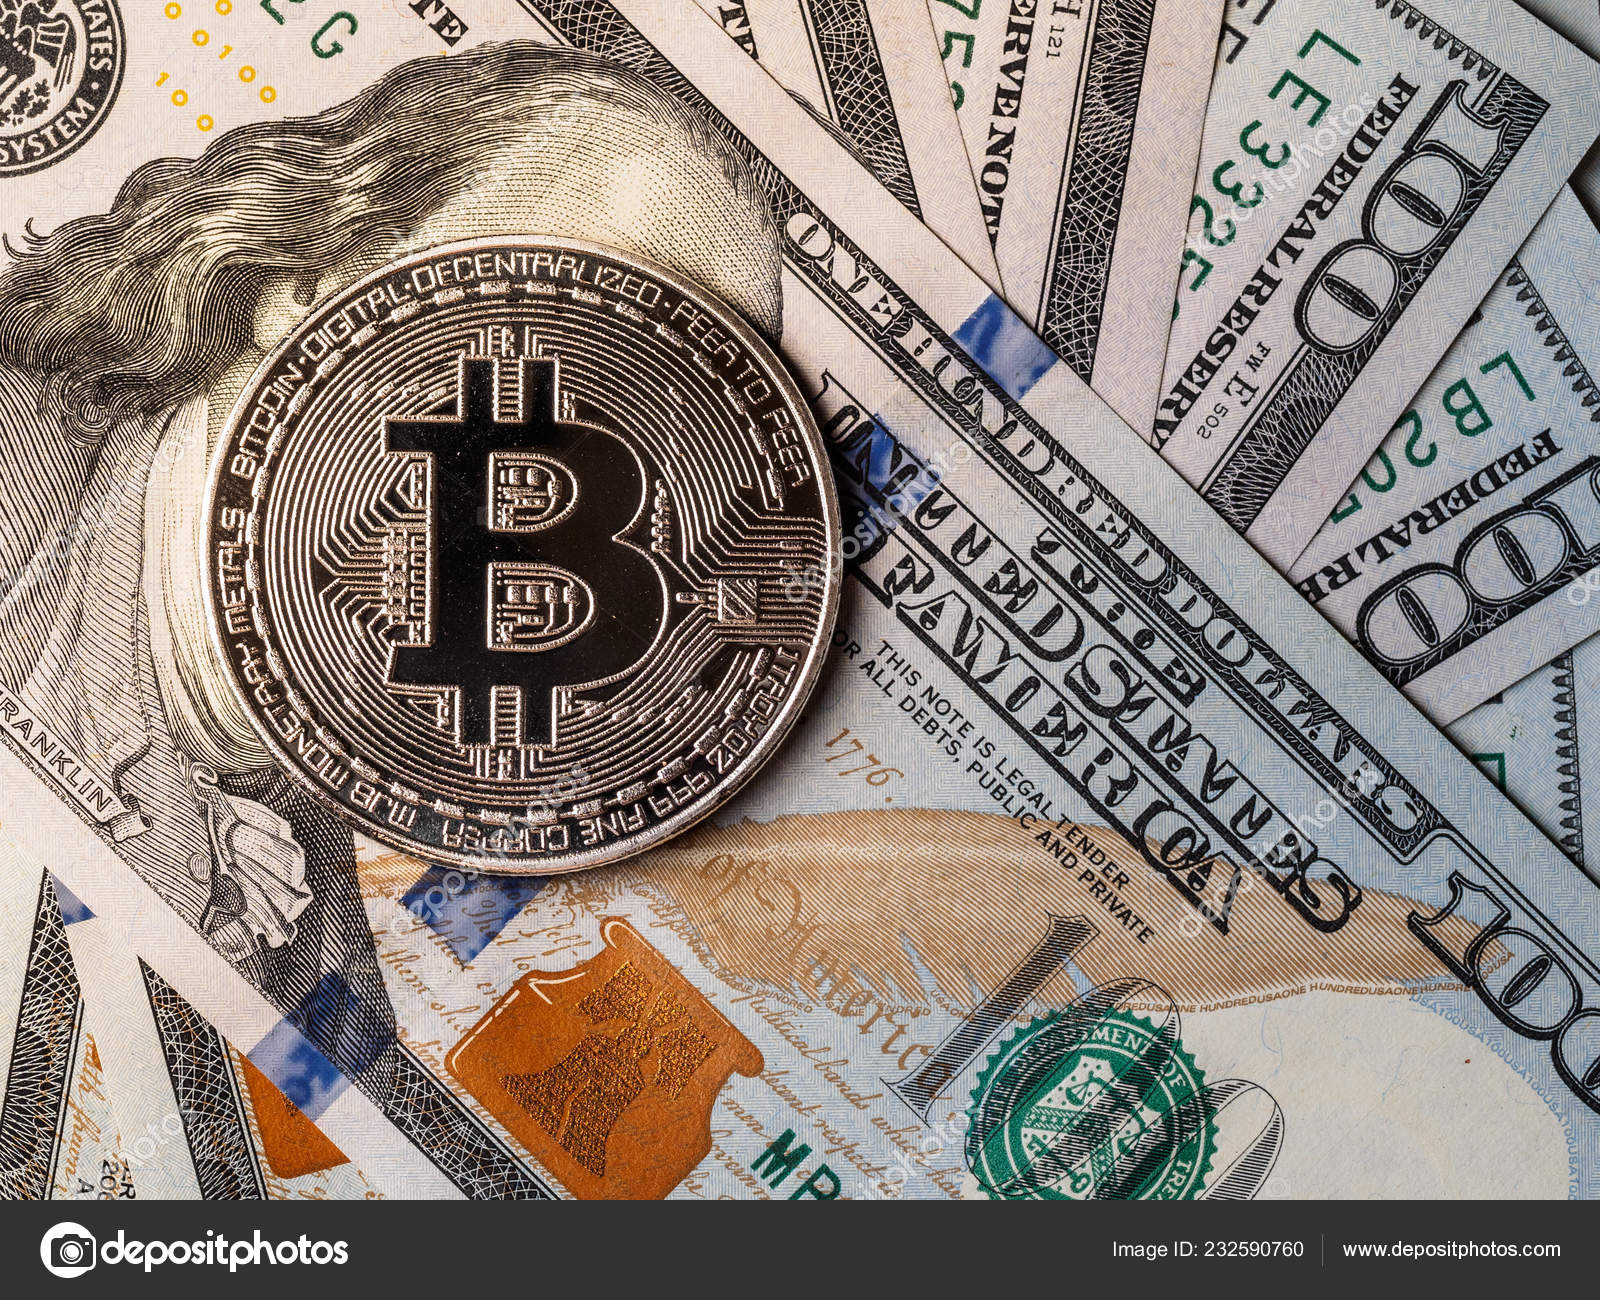 Bitcoin cash в доллары 724 трансфер отзывы